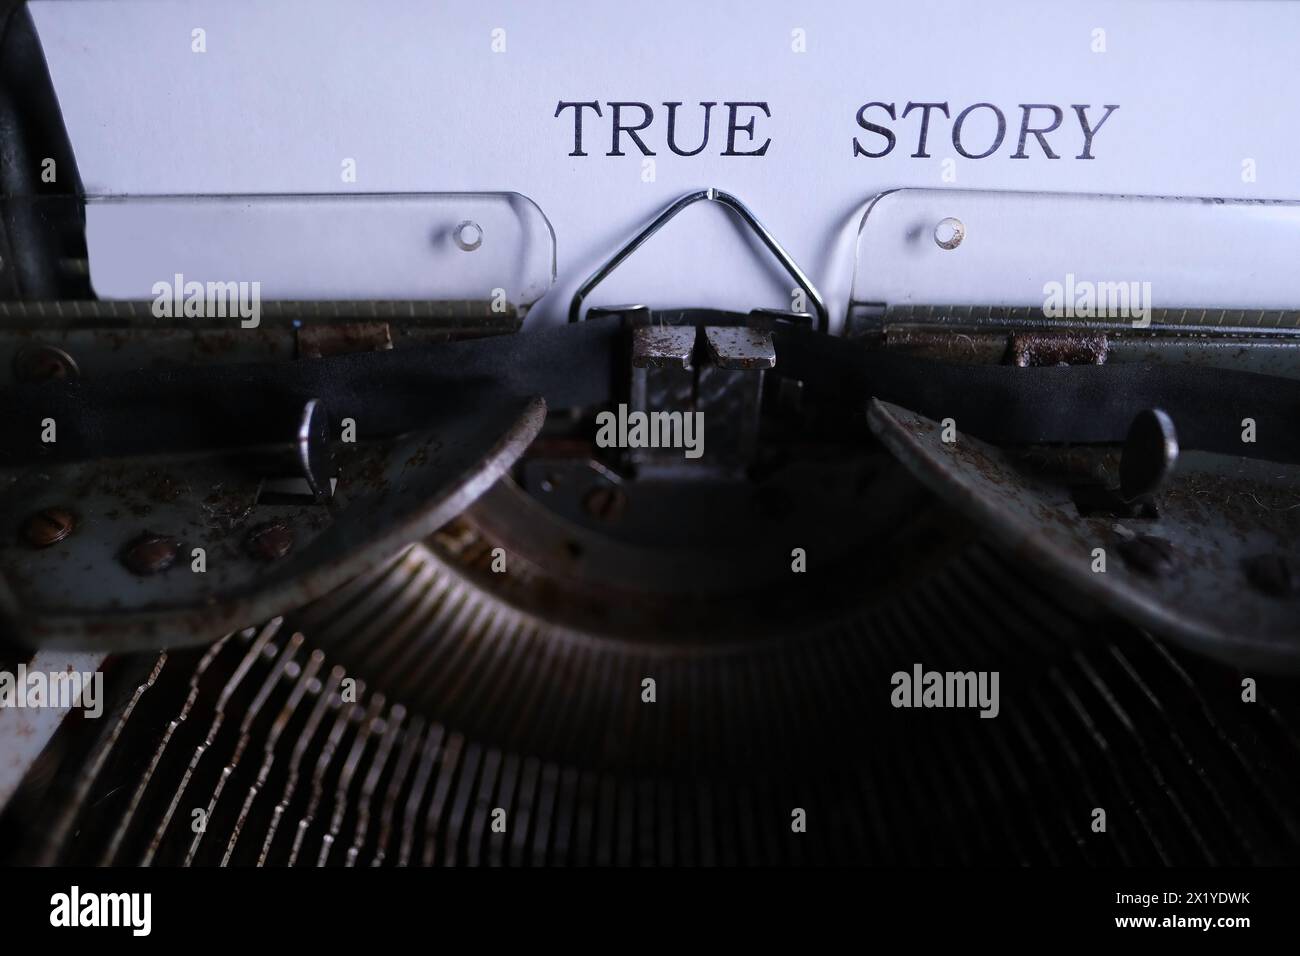 vecchia macchina da scrivere sul tavolo, le parole la storia vera sono stampate su carta in grande formato, stile retrò, concetto di scrittore, giornalista, detective privato Foto Stock